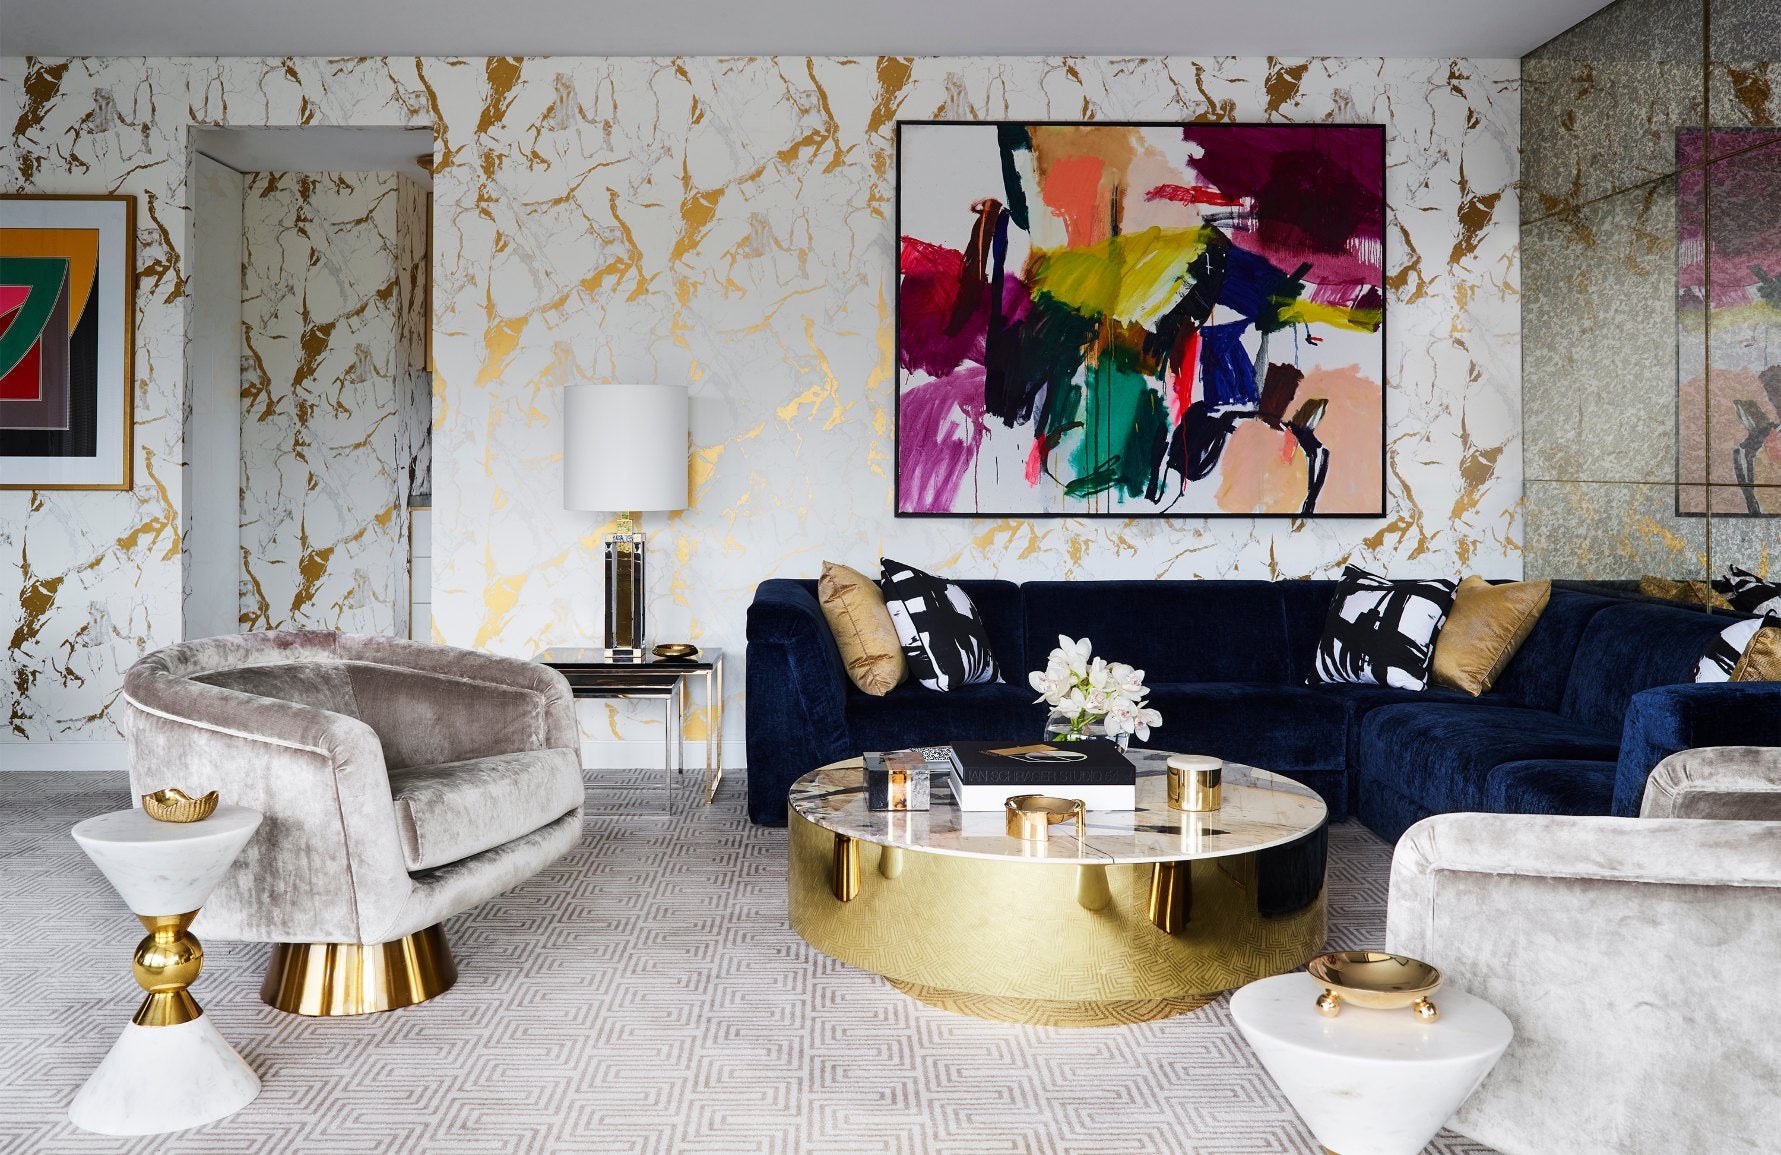 7 Contemporary Living Room Design Ideas LuxDecocom